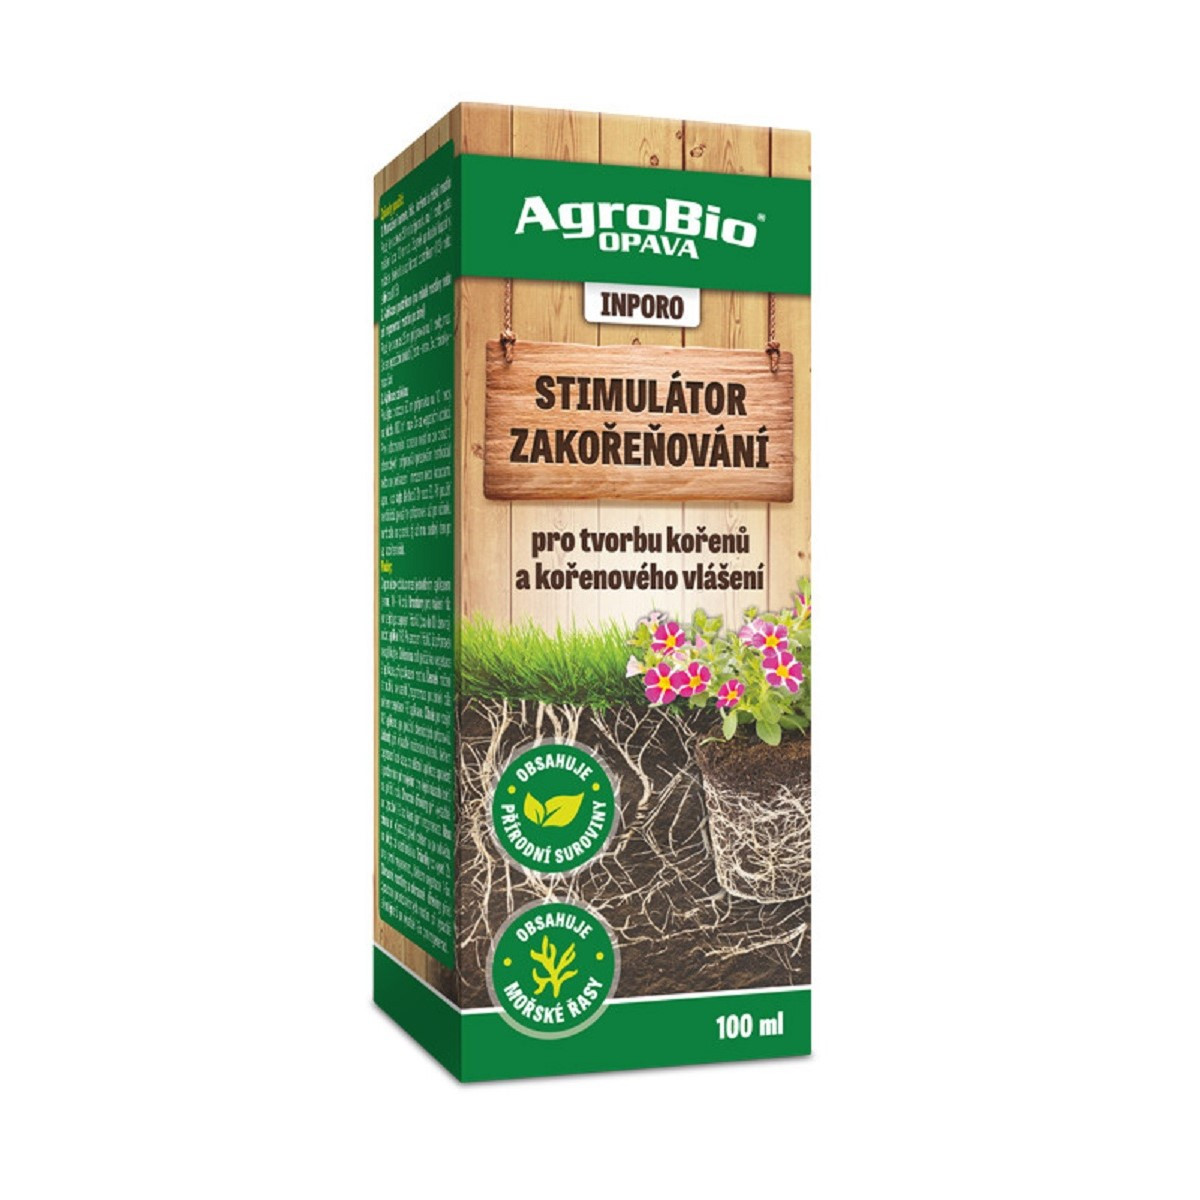 Stimulátor zakořeňování Inporo - AgroBio - 100 ml